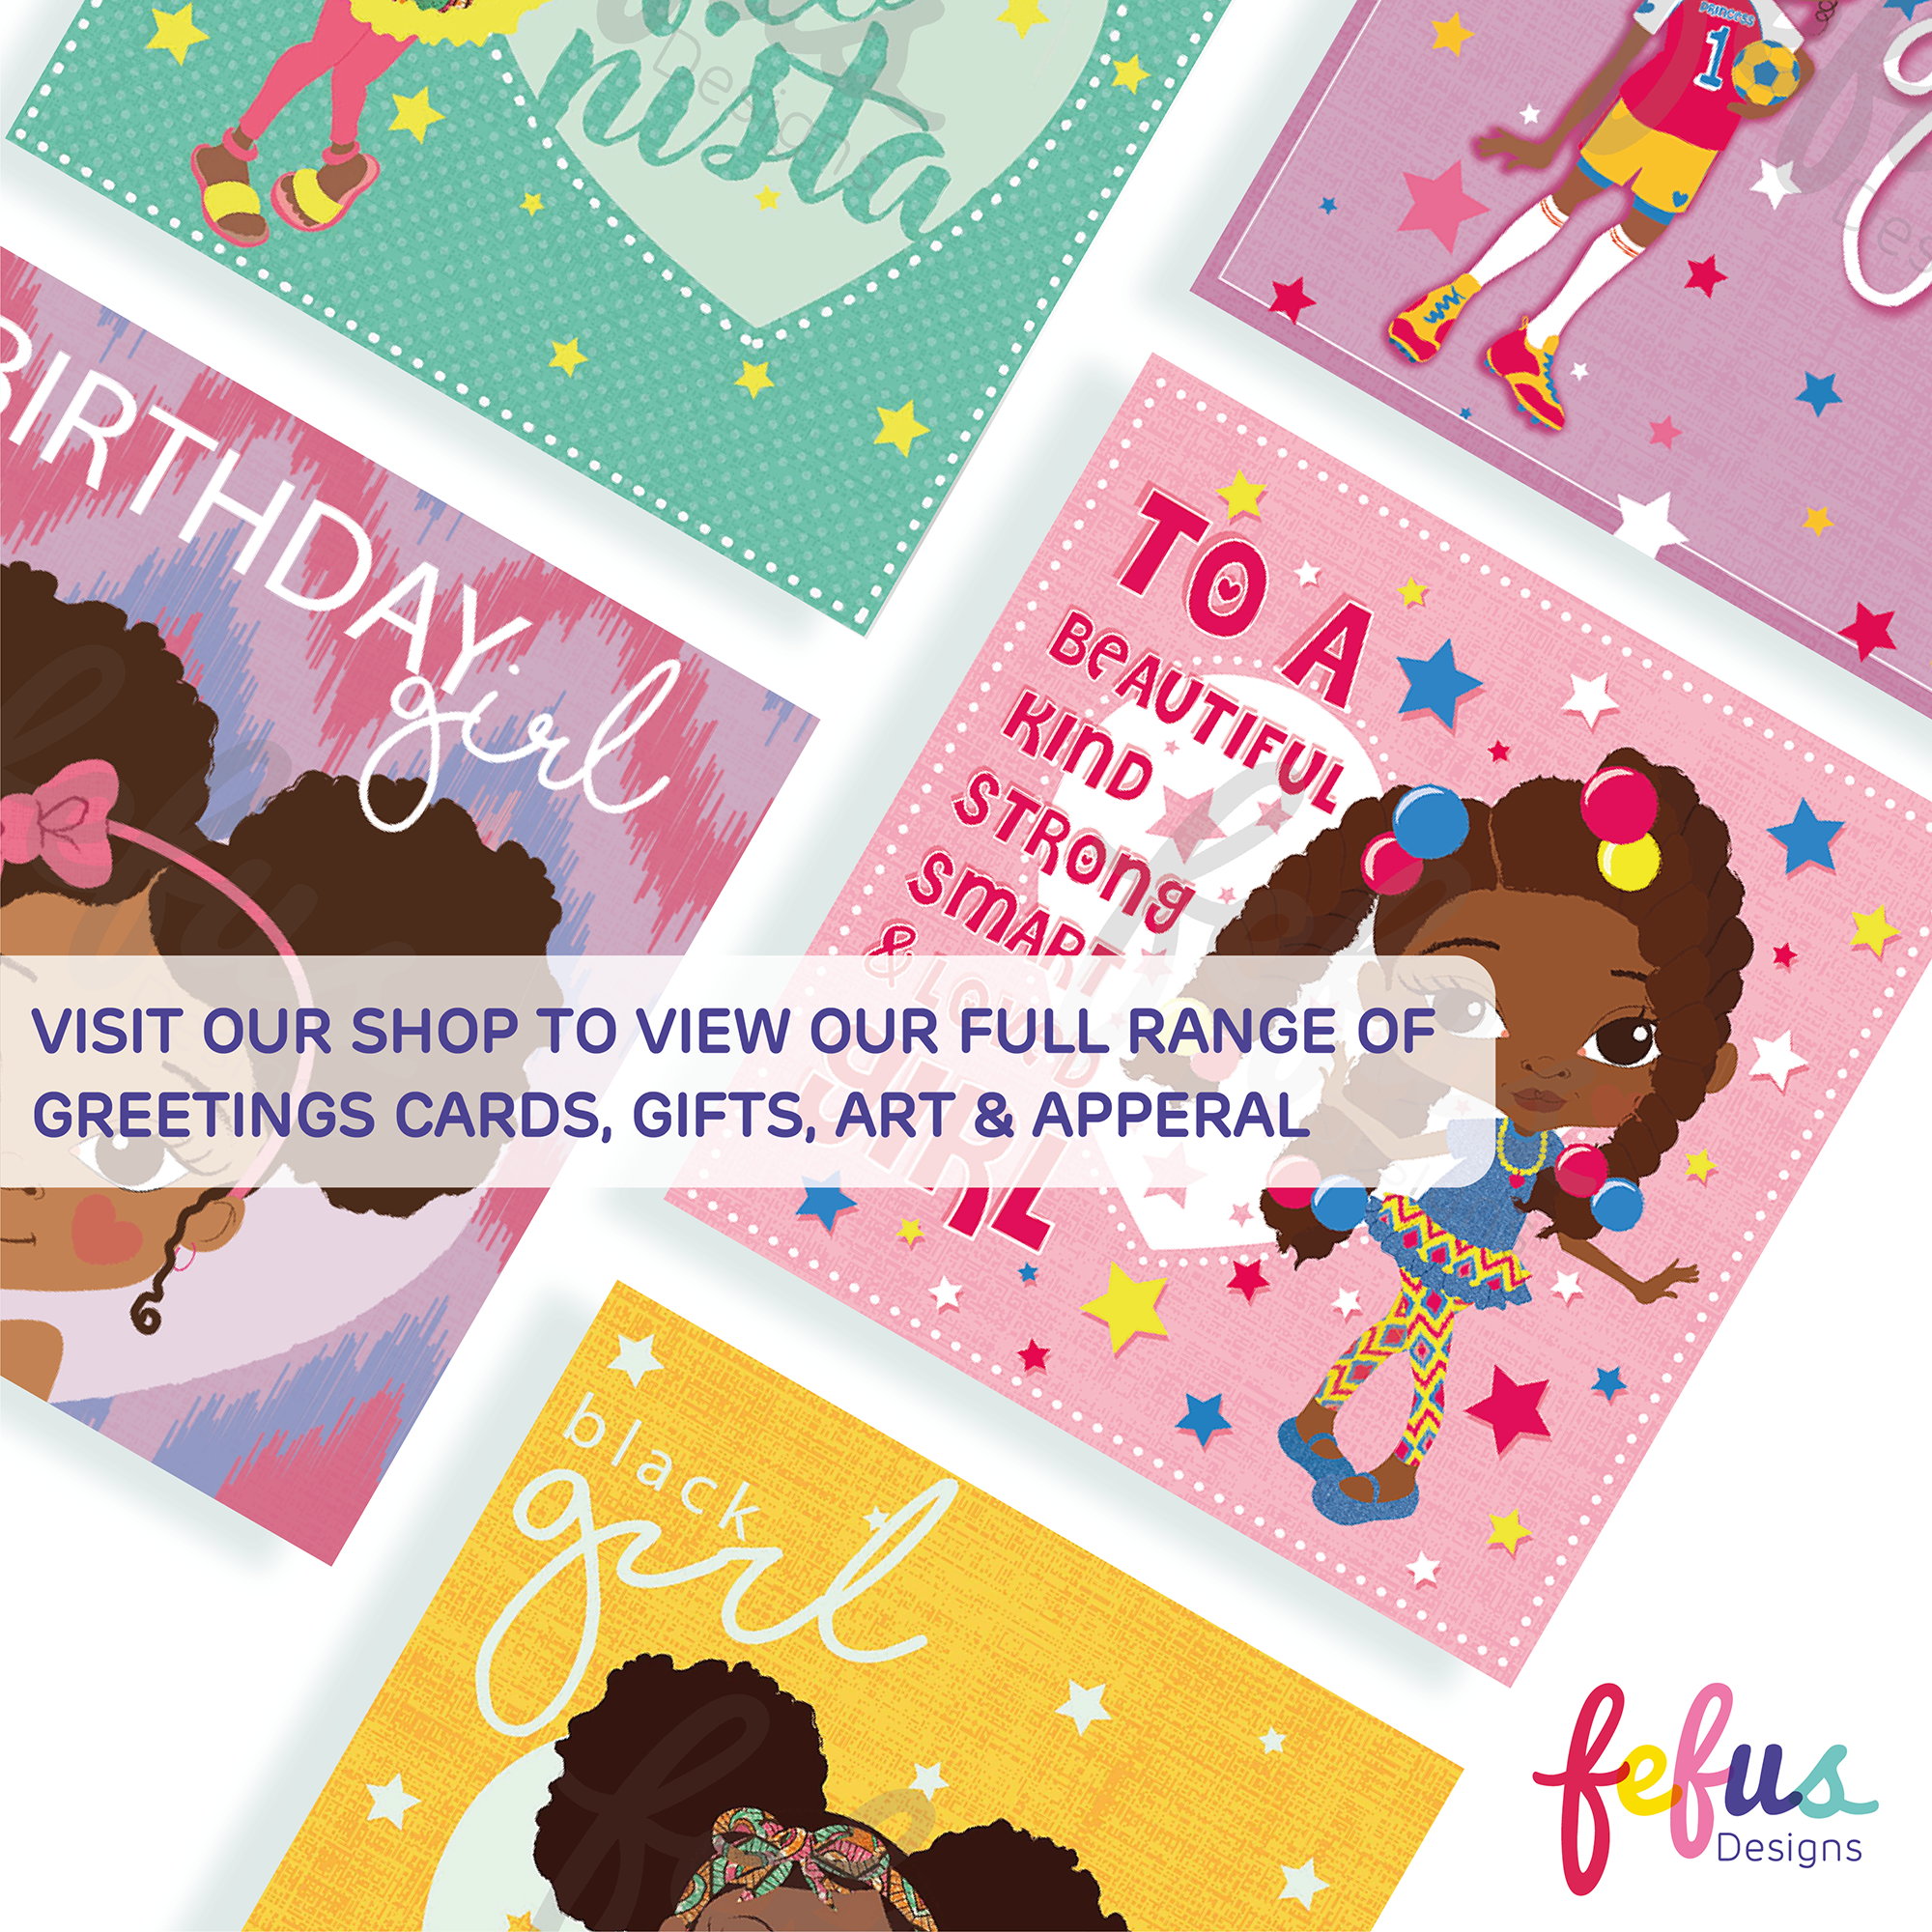 Deja - Black Girl Magic Greetings Card | Fefus designs